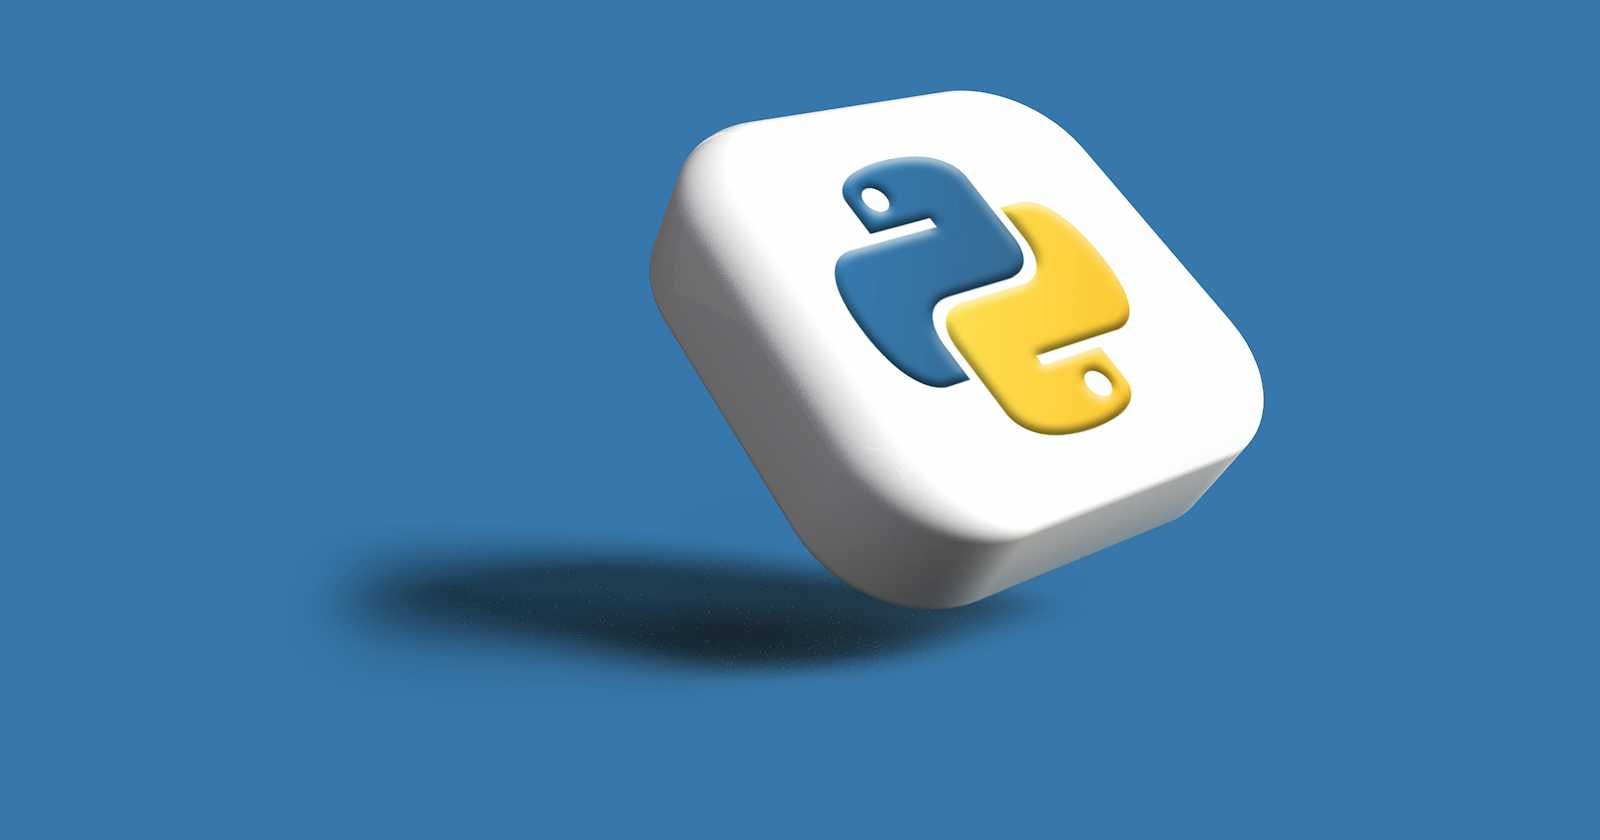 Back to Basics - Python #01